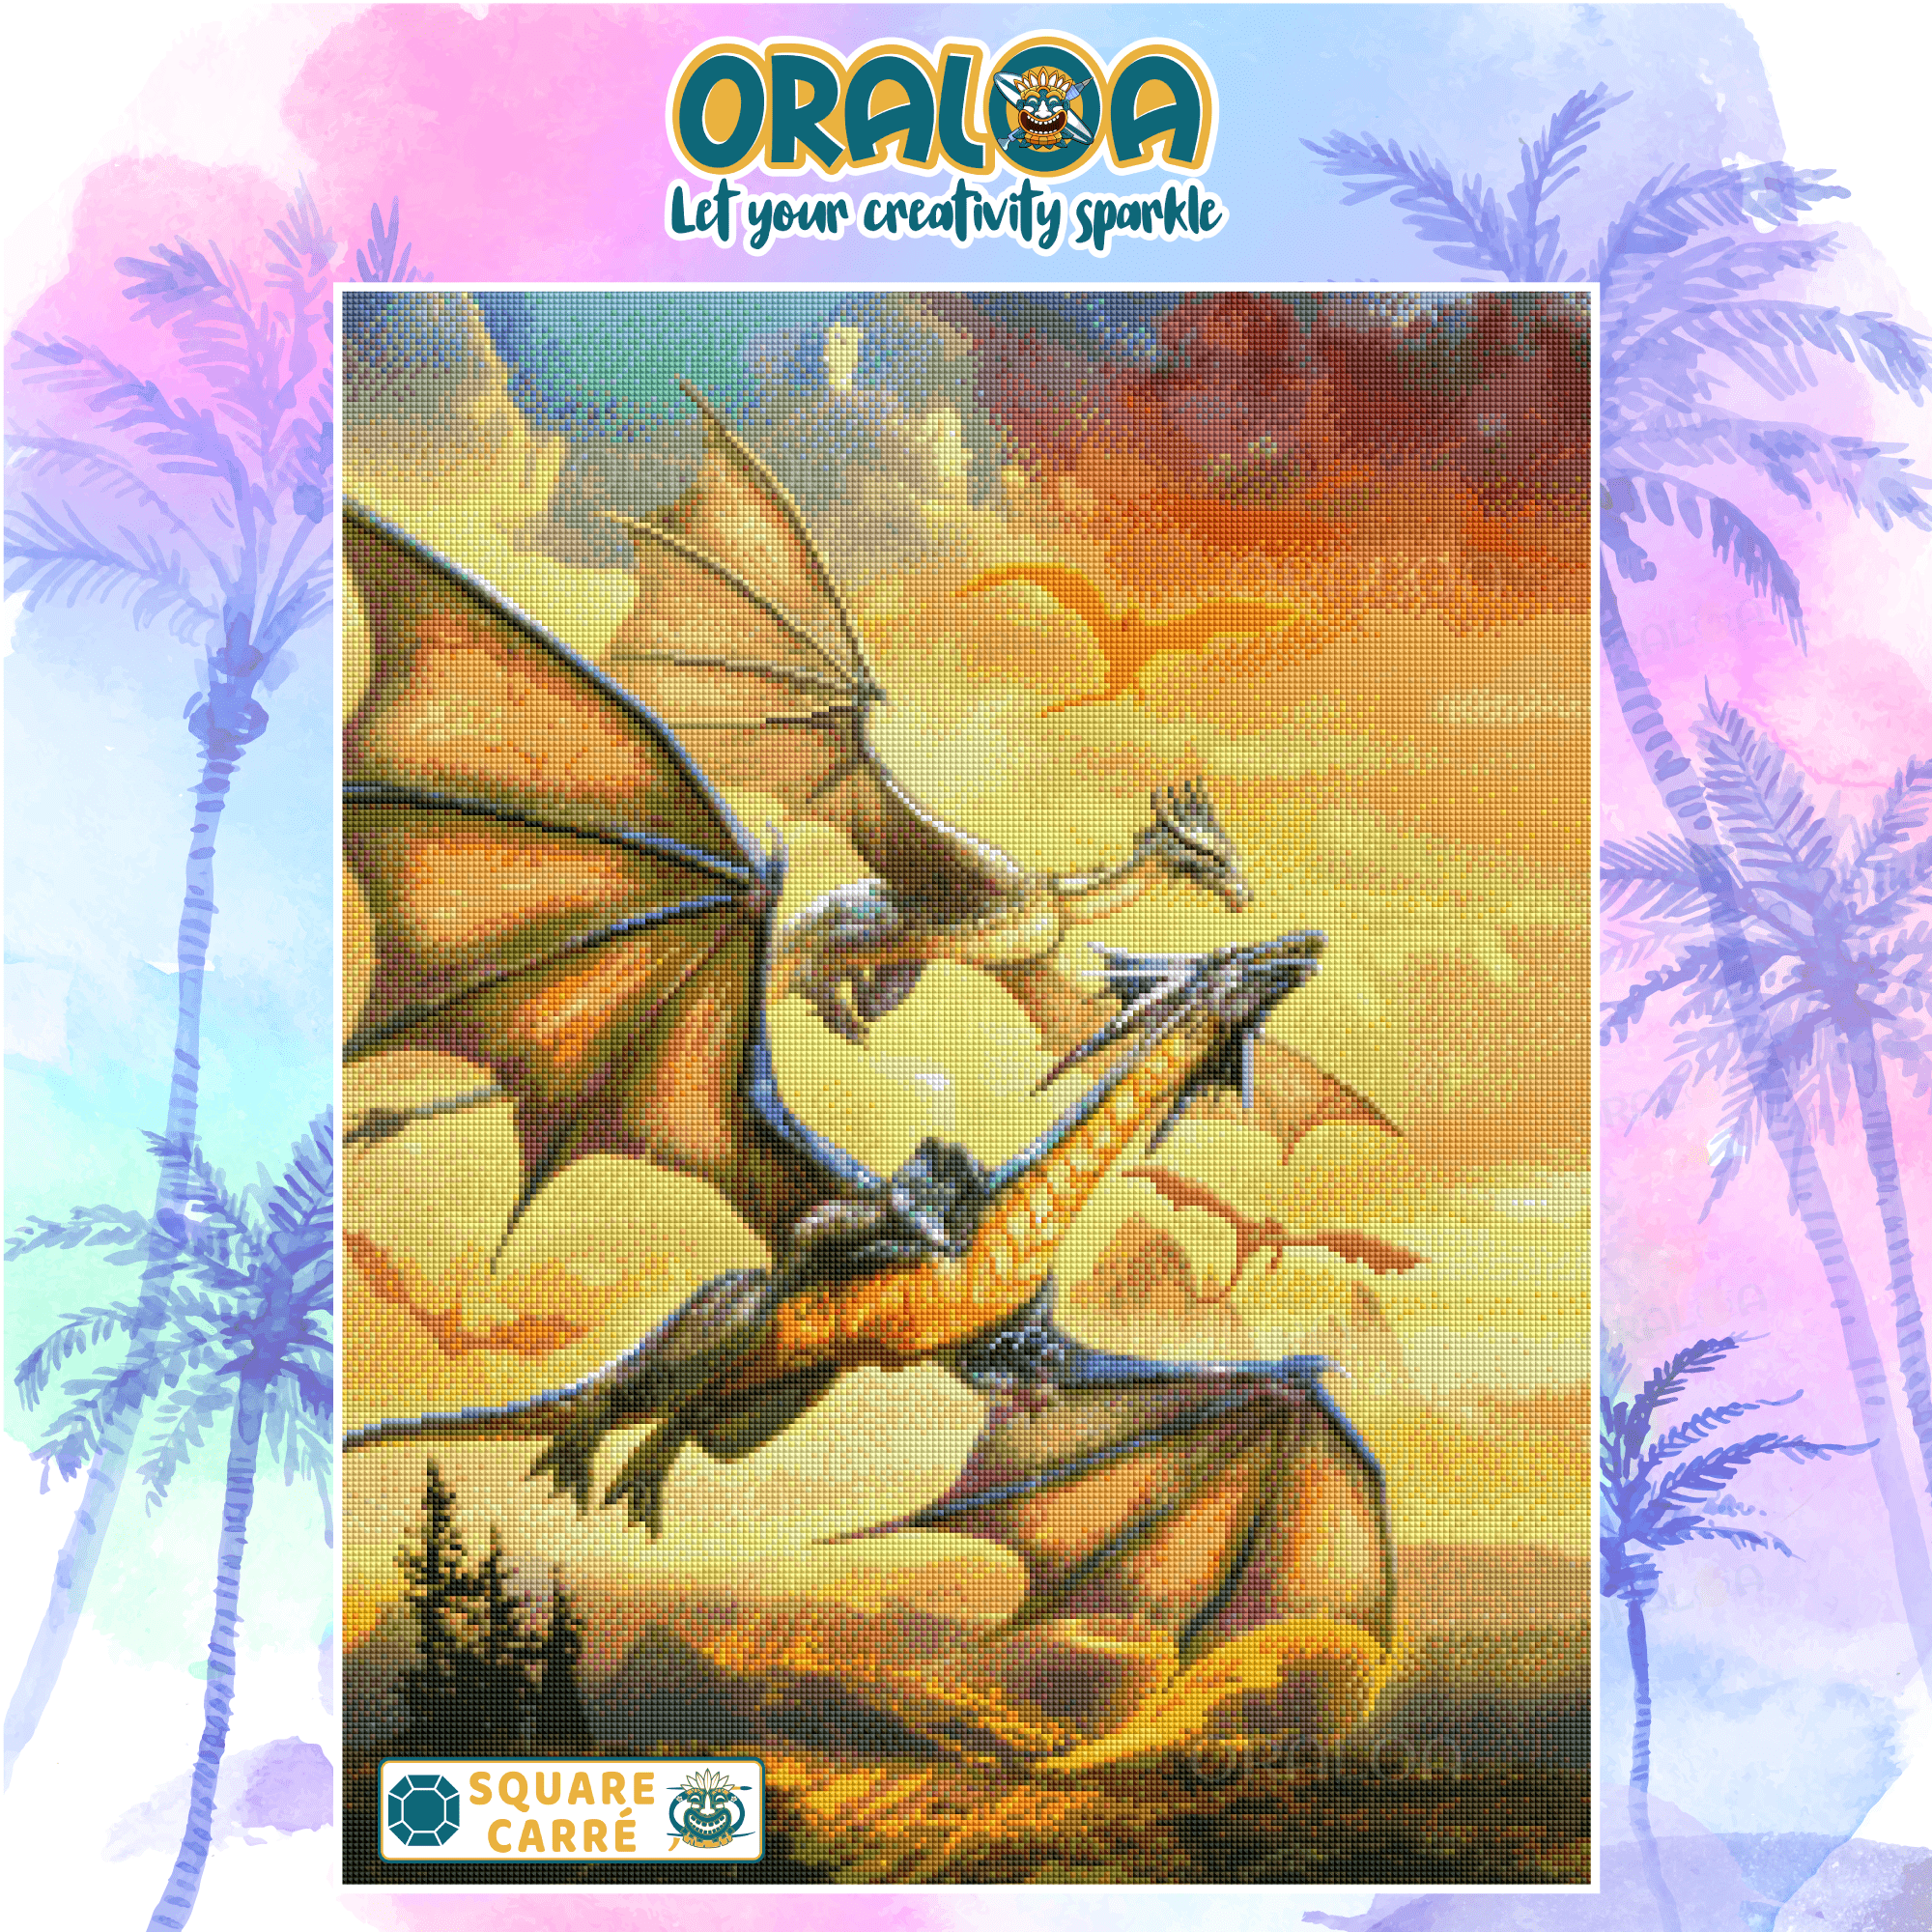 Dragon over the landscape Oraloa.